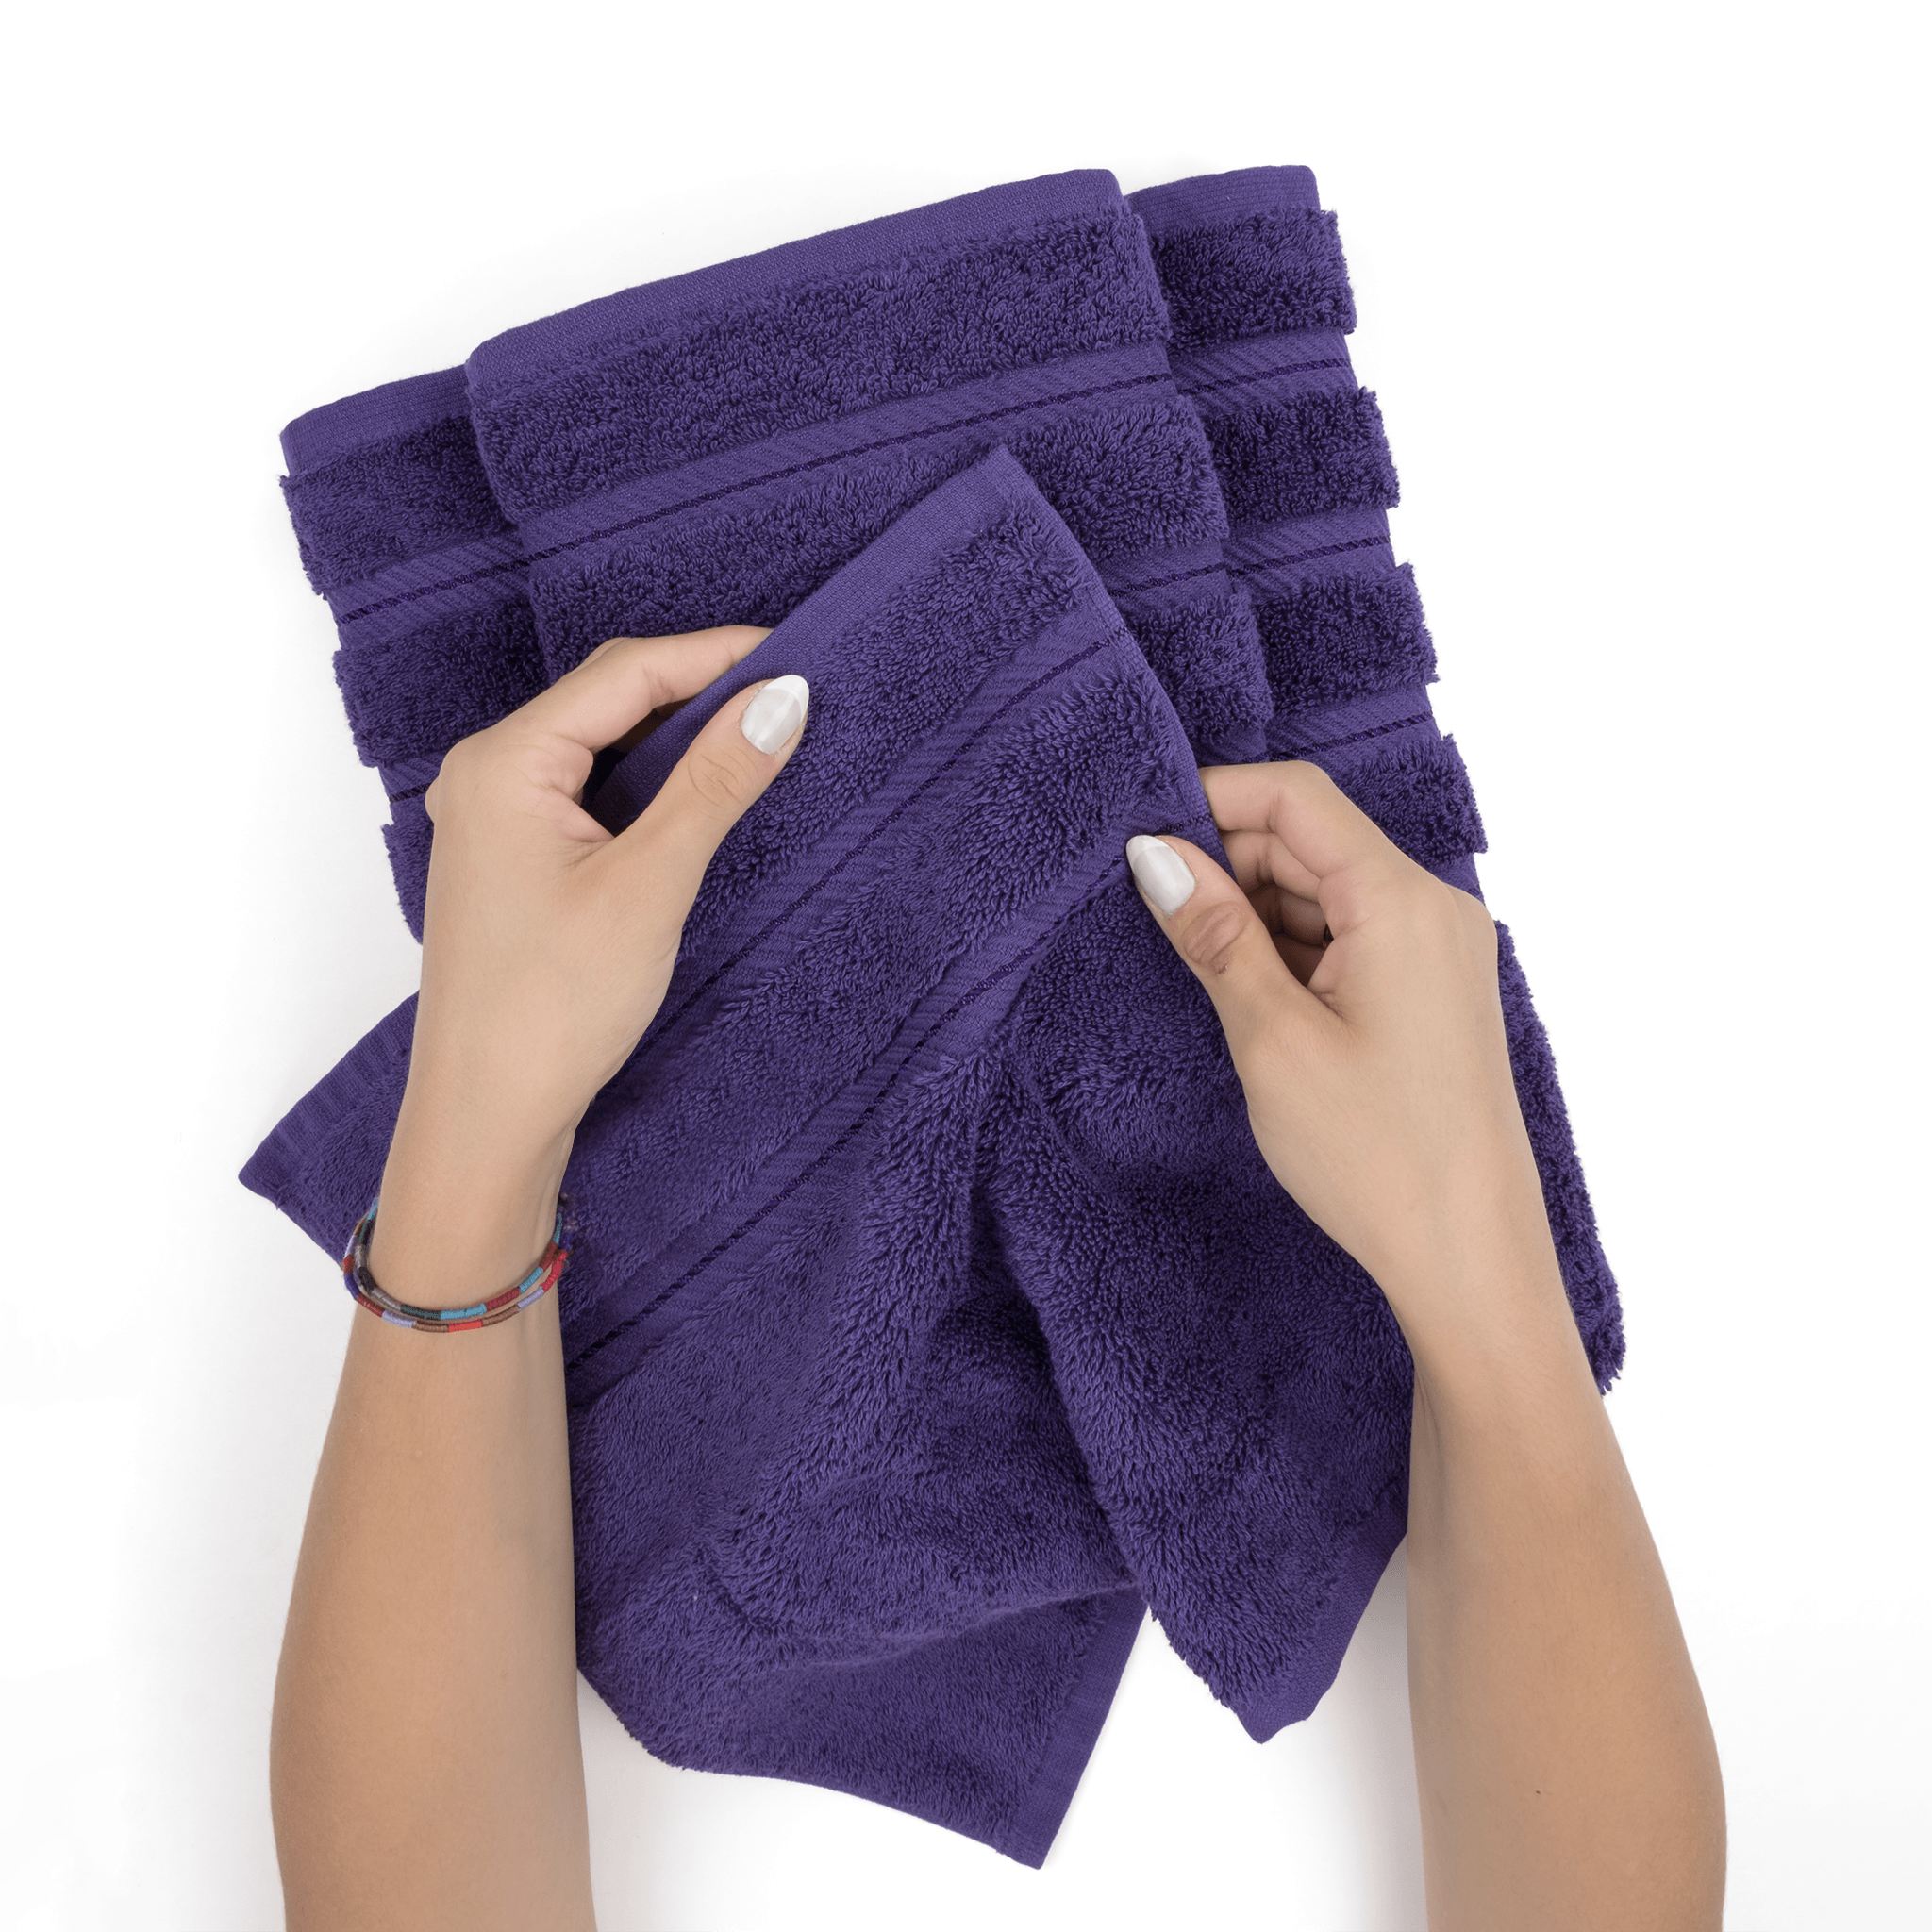 Shop Turkish Towel Set of 3 Bundle Pack